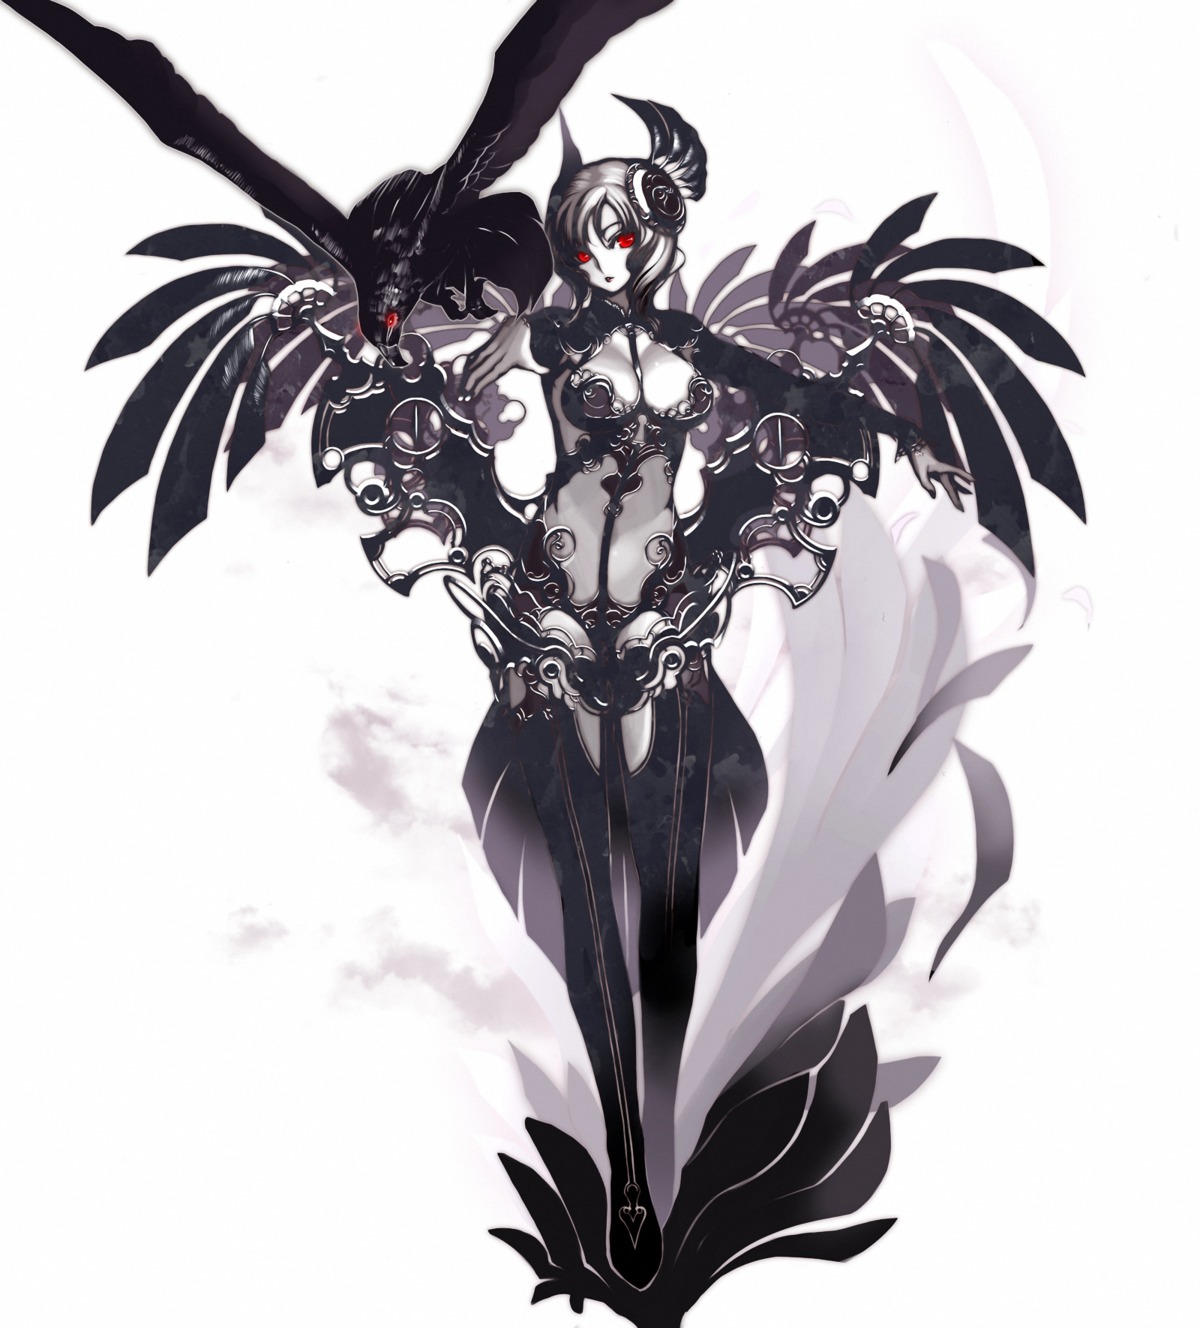 armor cleavage tsunekun wings